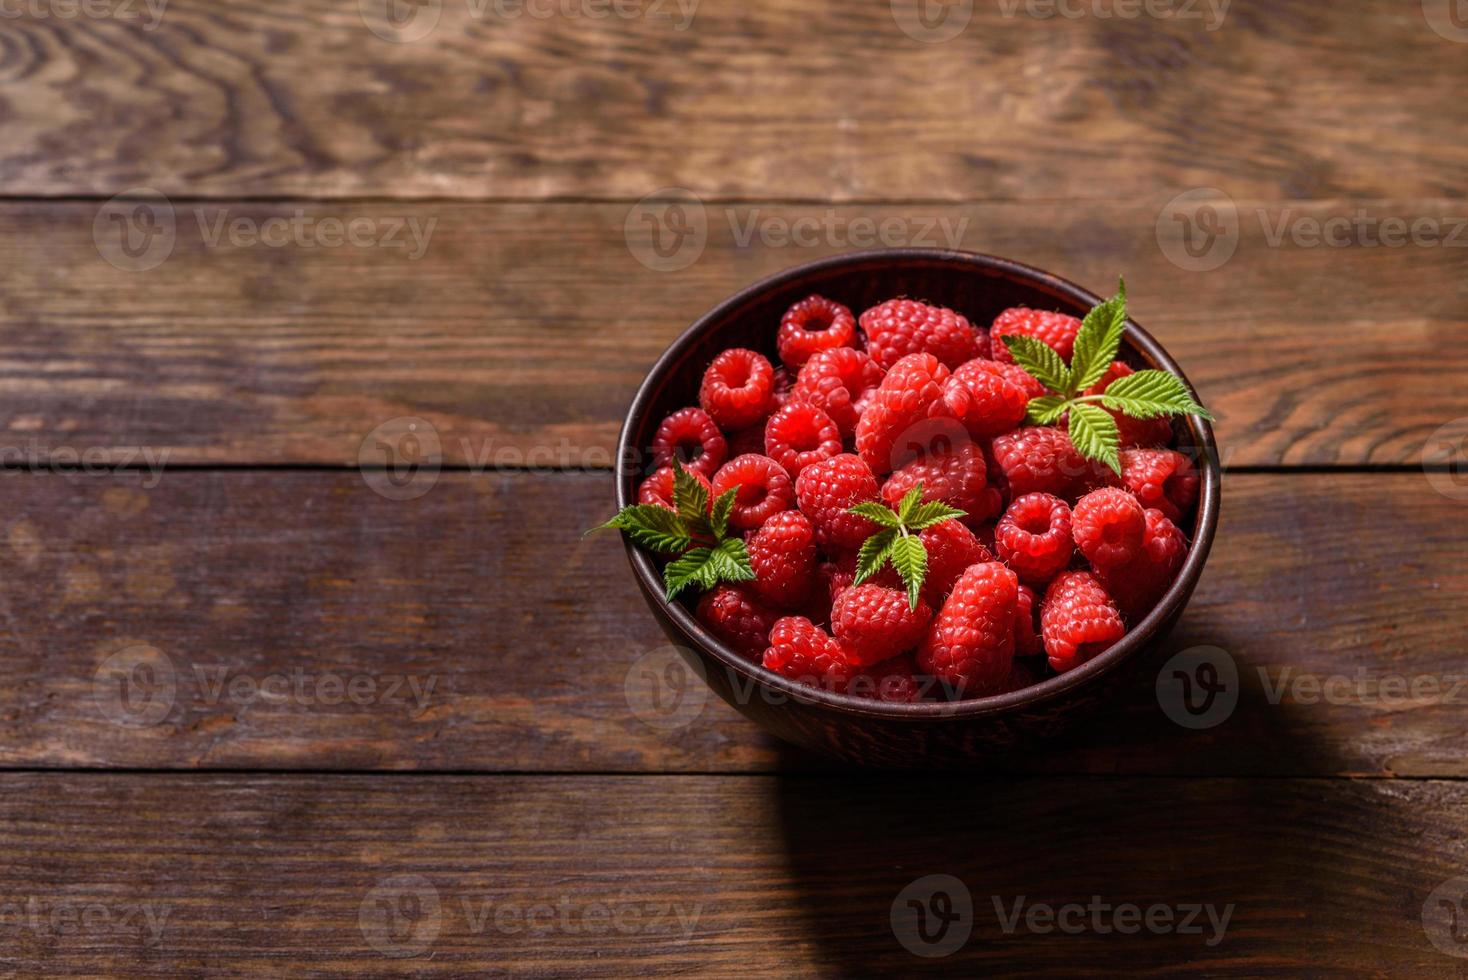 délicieuses framboises rouges juteuses fraîches sur une table sombre photo